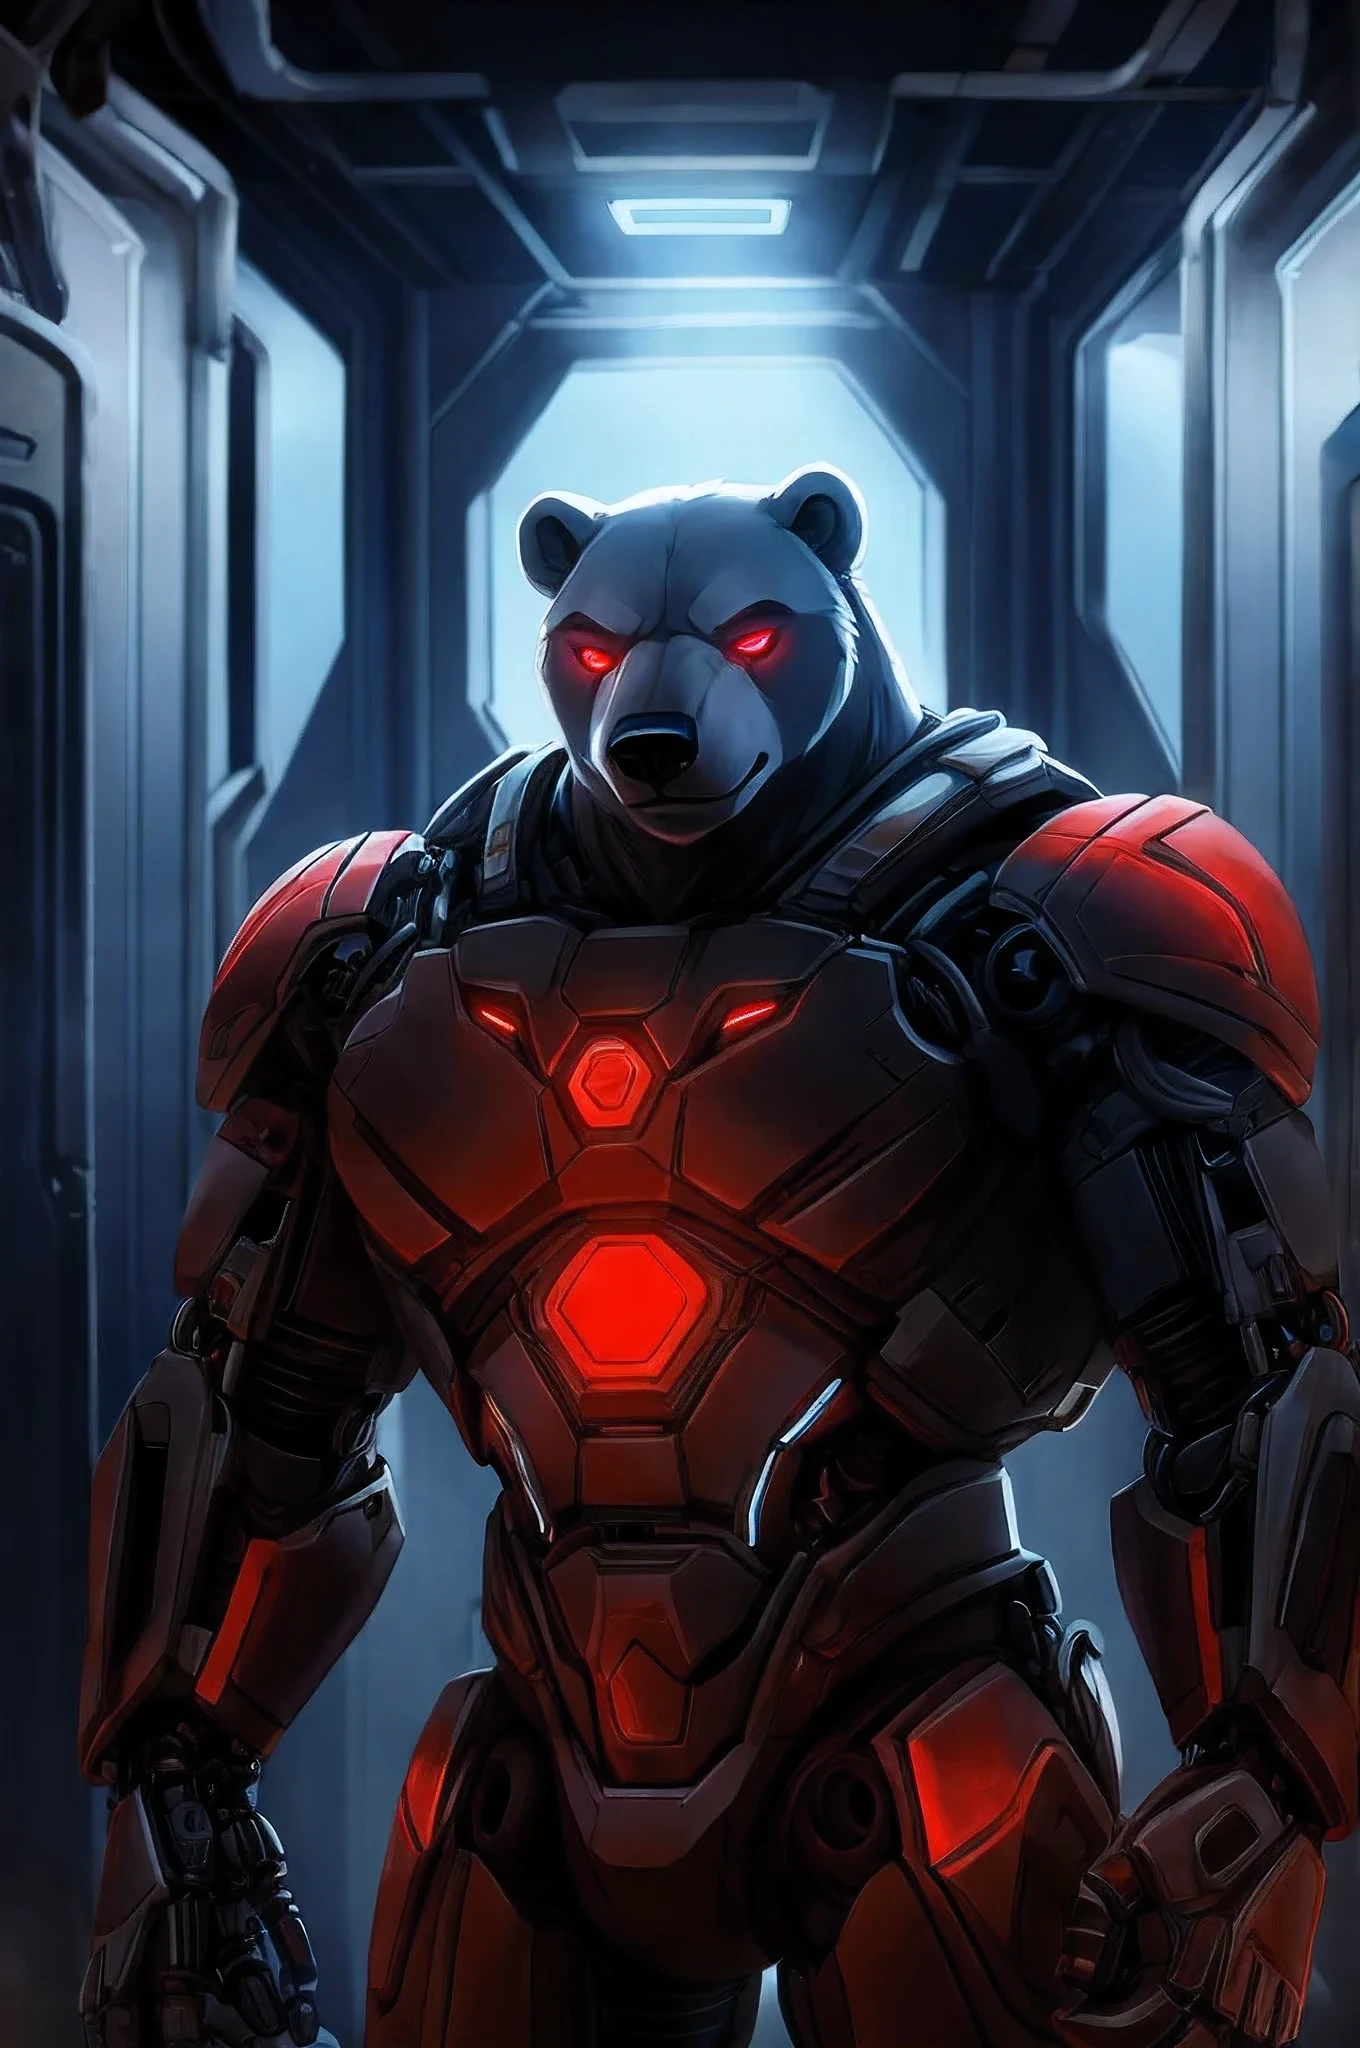 (personnage) Ours noir Anthro cyborg avec un corps principalement mécanique (hors tête) avec des plaques frontales en métal et des yeux rouges brillants, regarder attentivement l&#39;ours polaire anthro biologique.